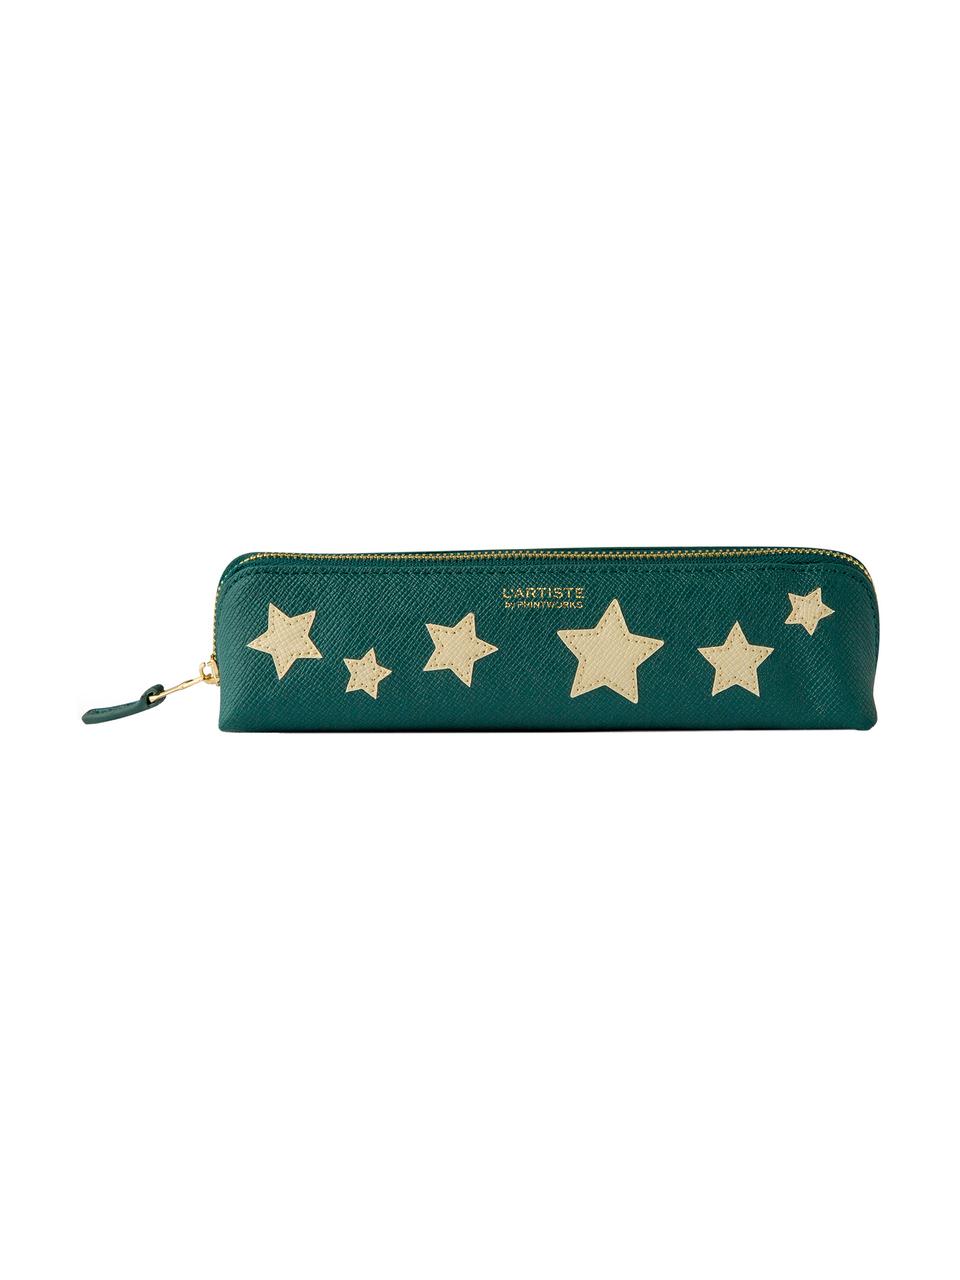 Astuccio Stars, Pelle sintetica, Beige, verde, dorato, Larg. 21 x Alt. 6 cm